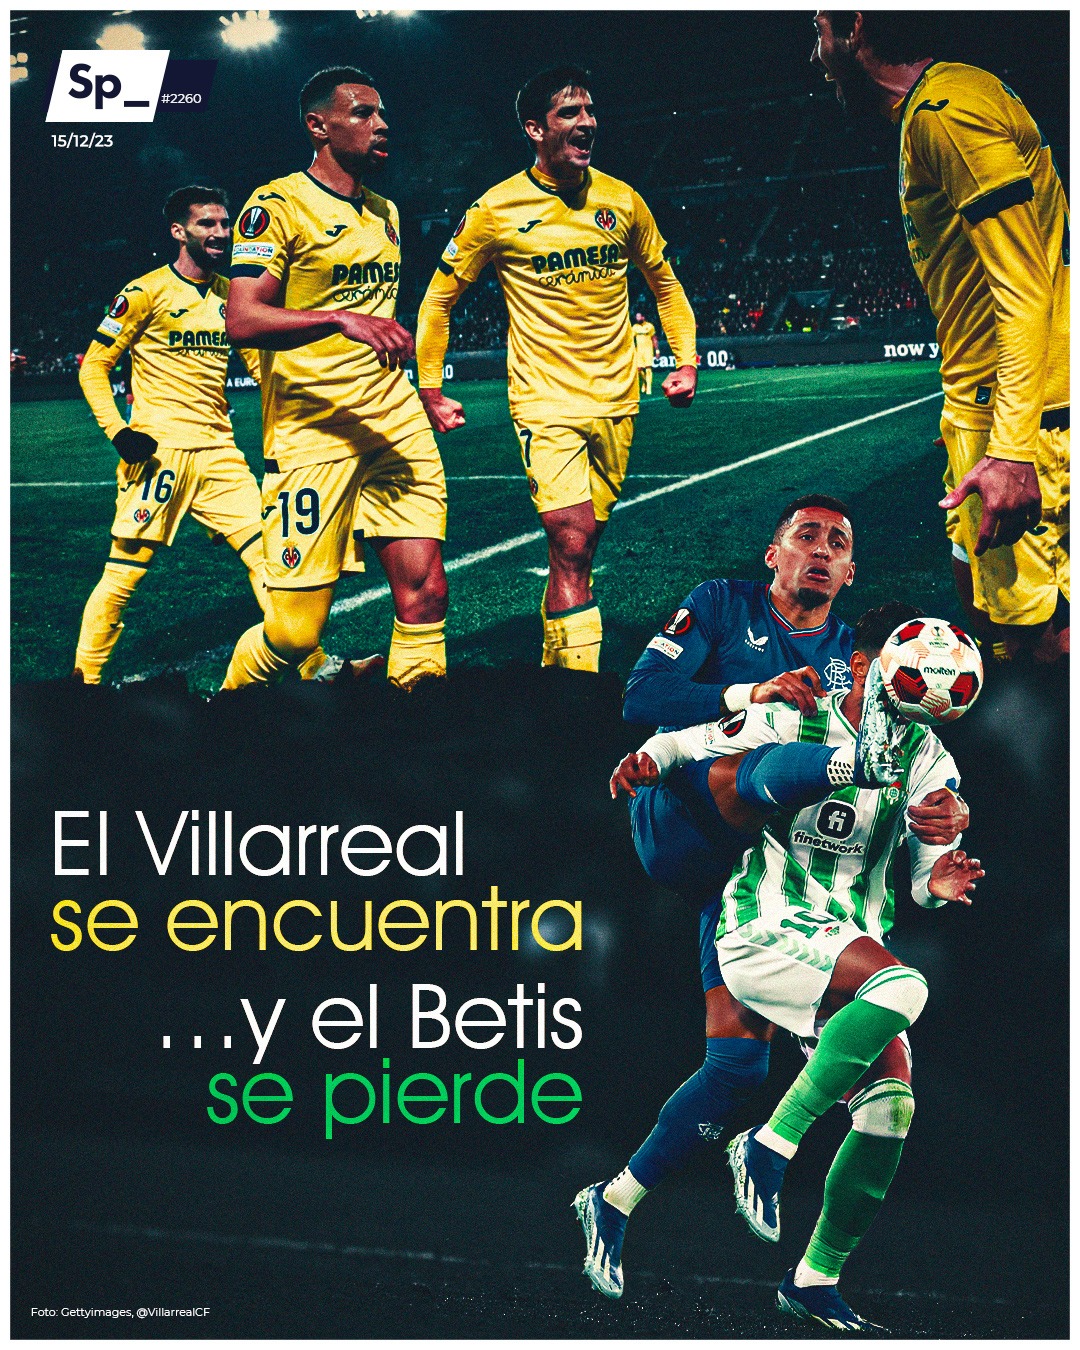 El Villarreal se encuentra y el Betis se pierde